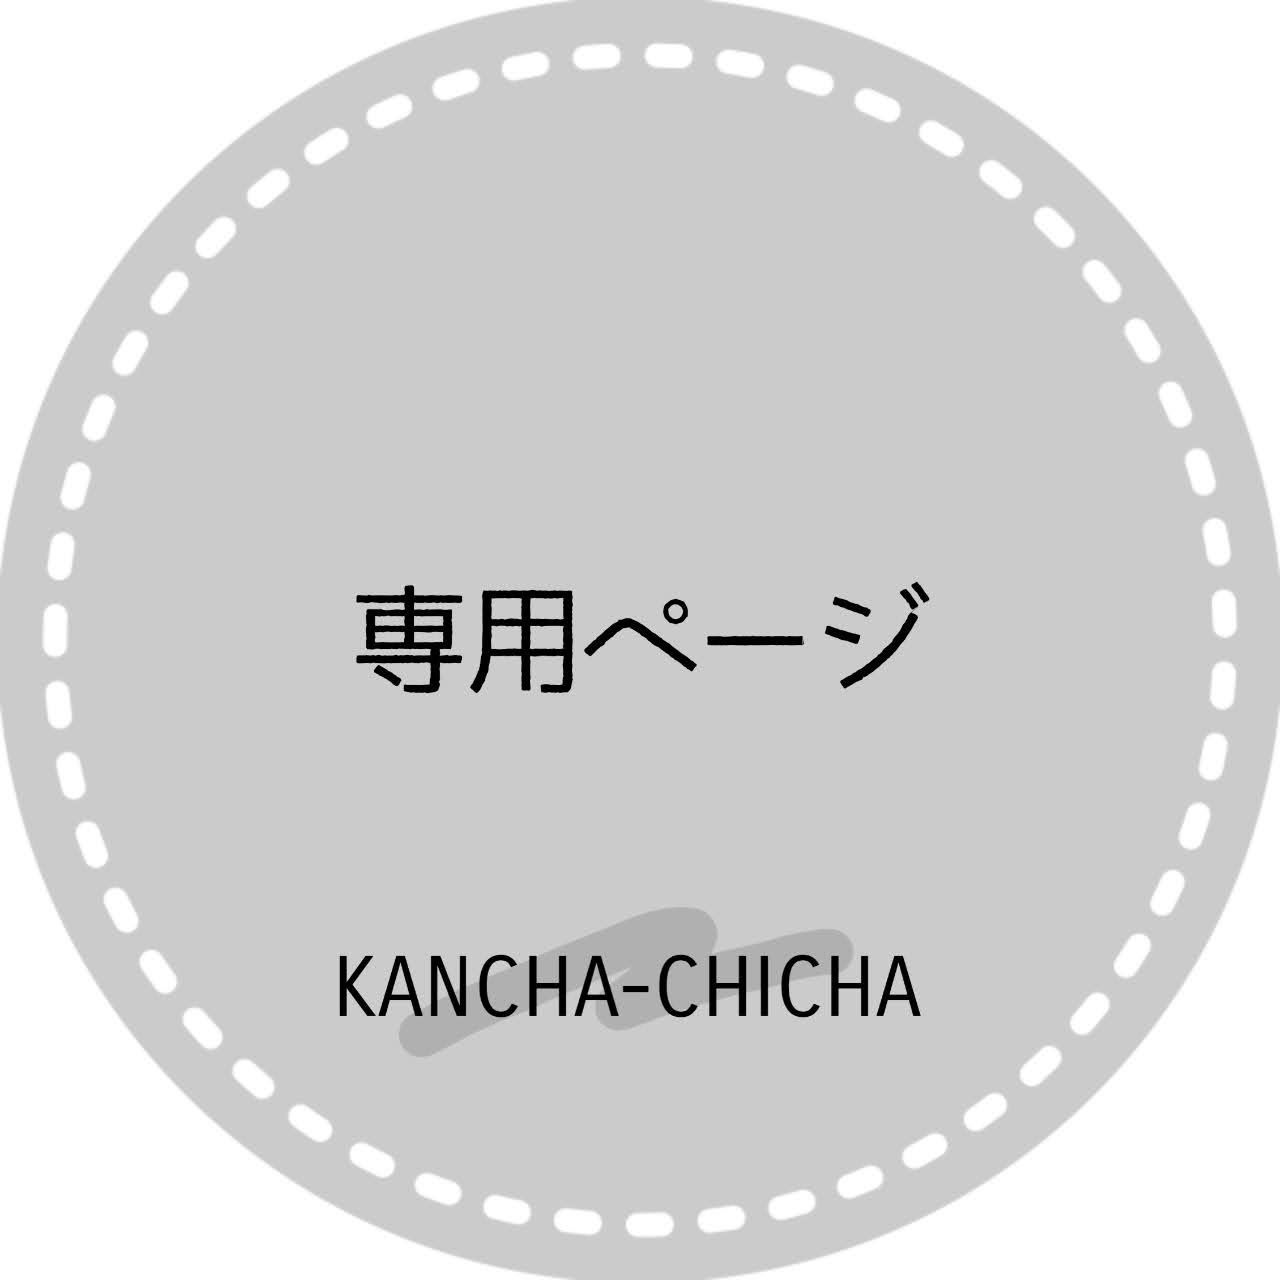 ル様専用ページ - KANCHA-CHICHA - メルカリ